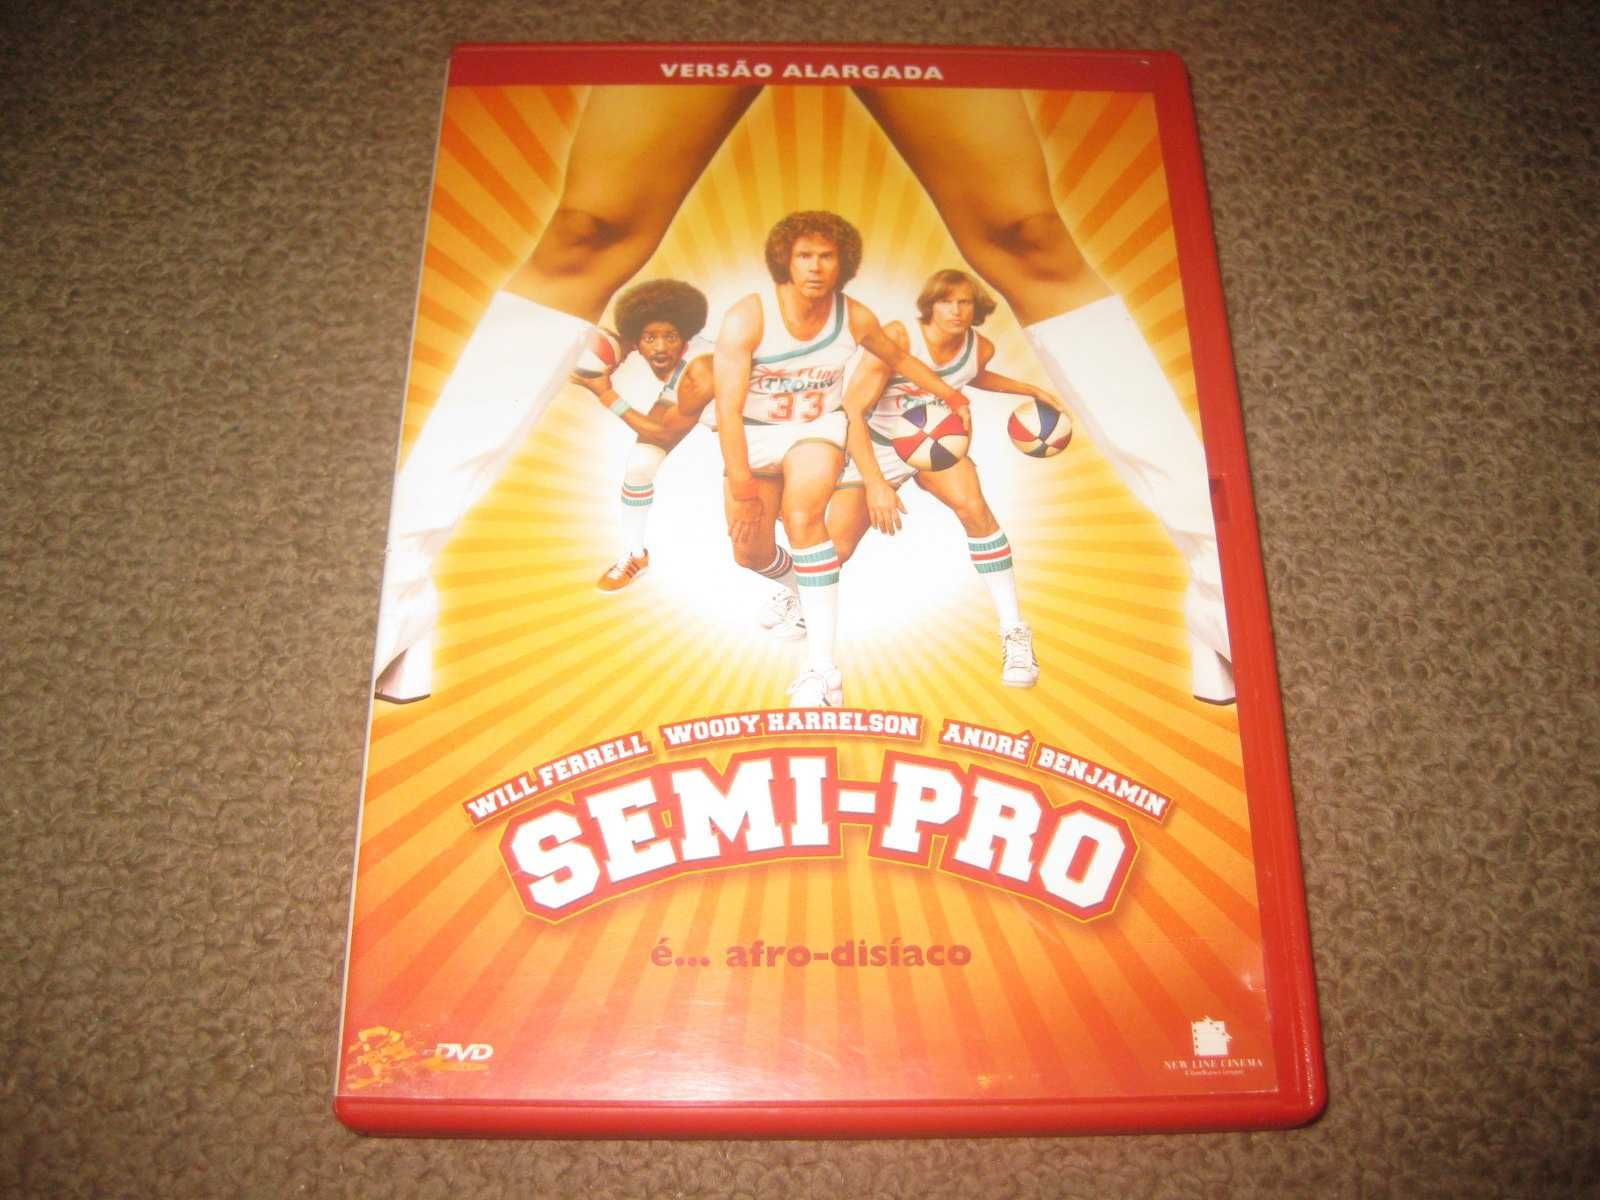 DVD "Semi-Pro" com Will Ferrell